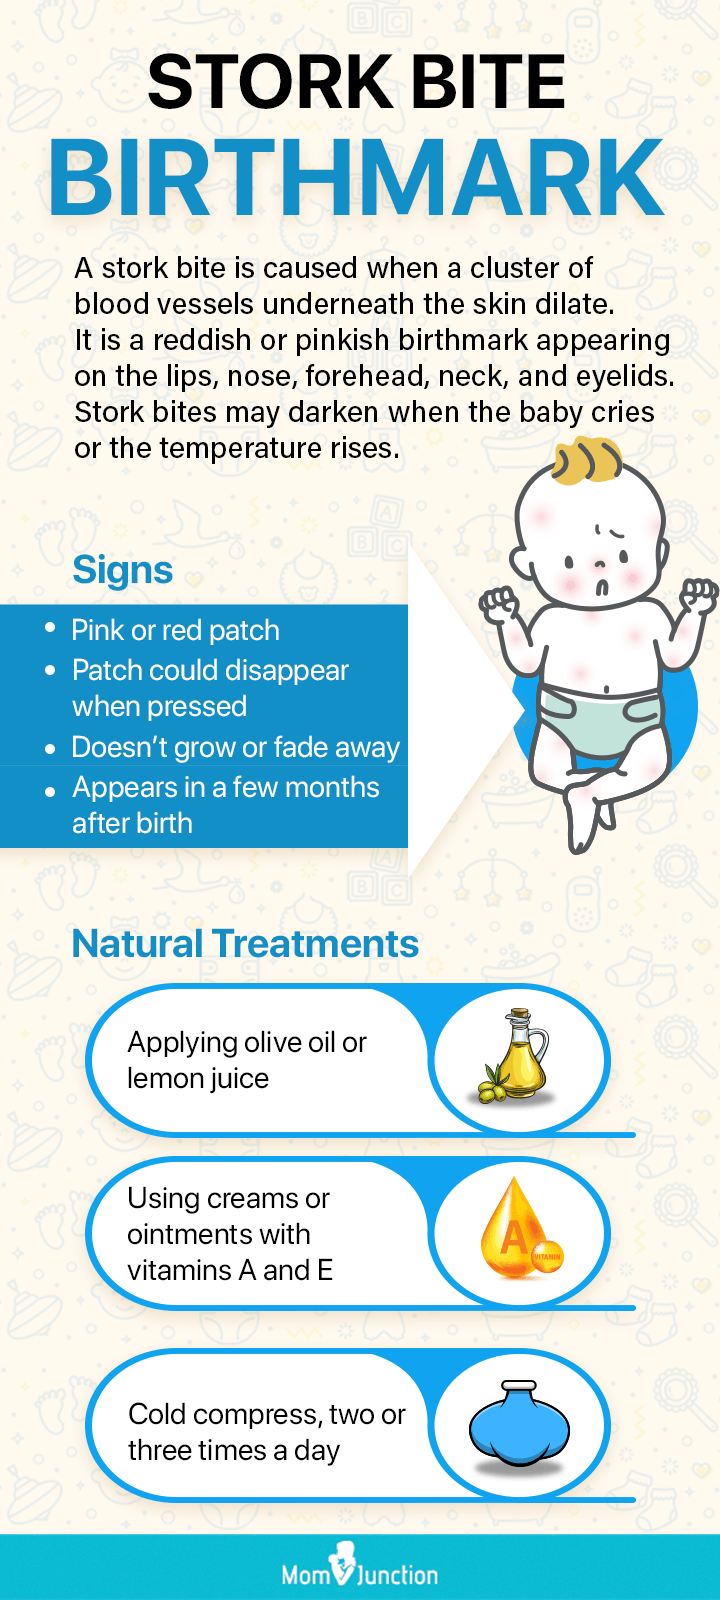 treatments for stork bites birthmark [Infographic]